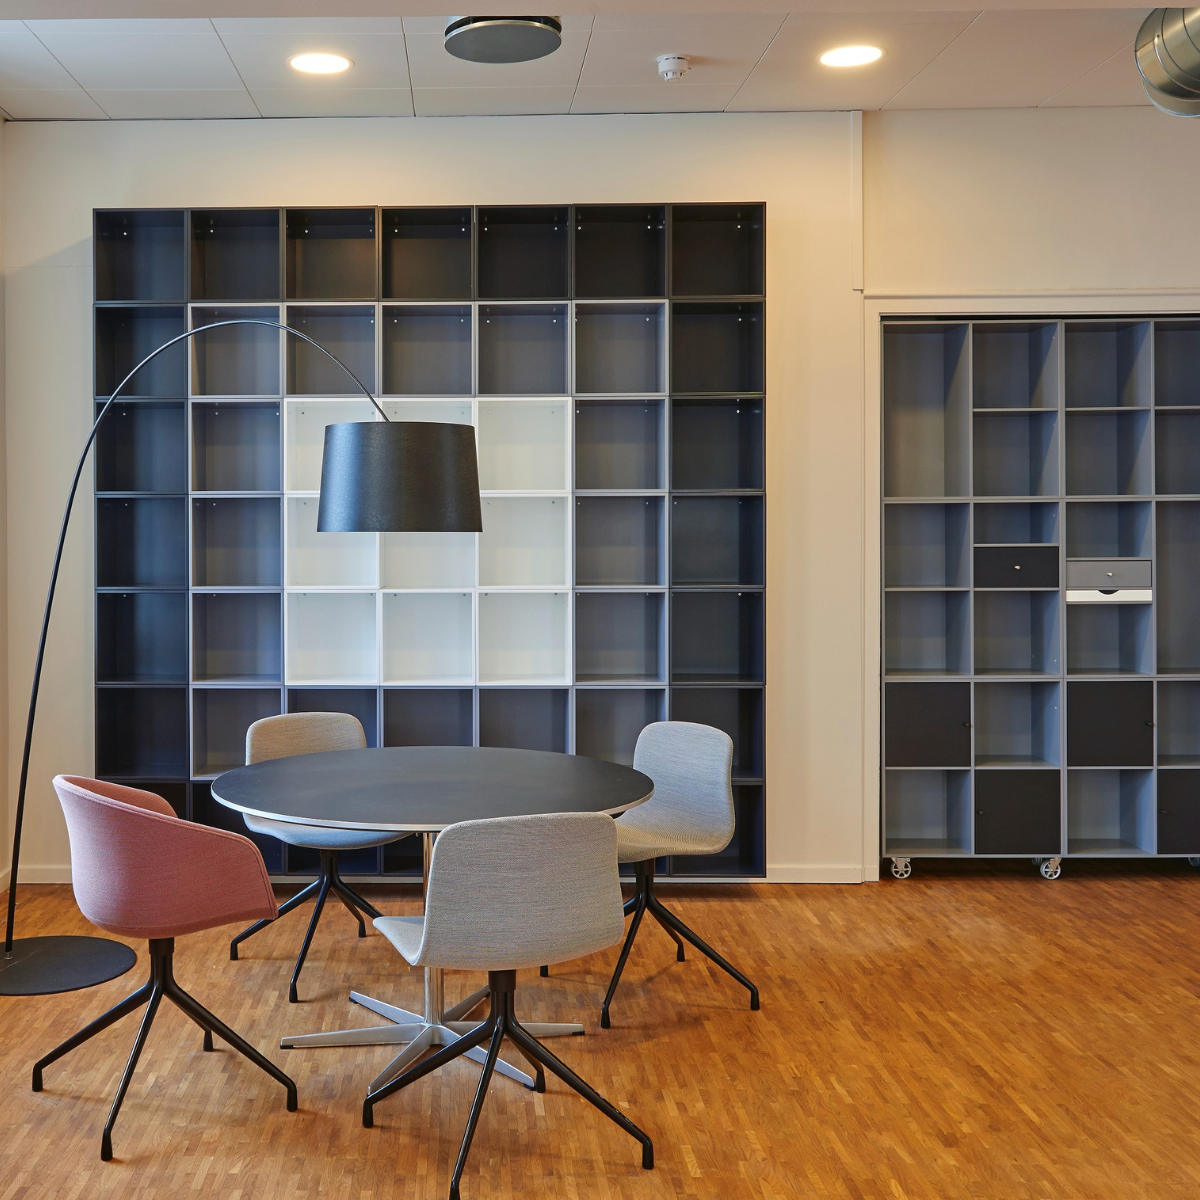 lighting-for-office-break-room